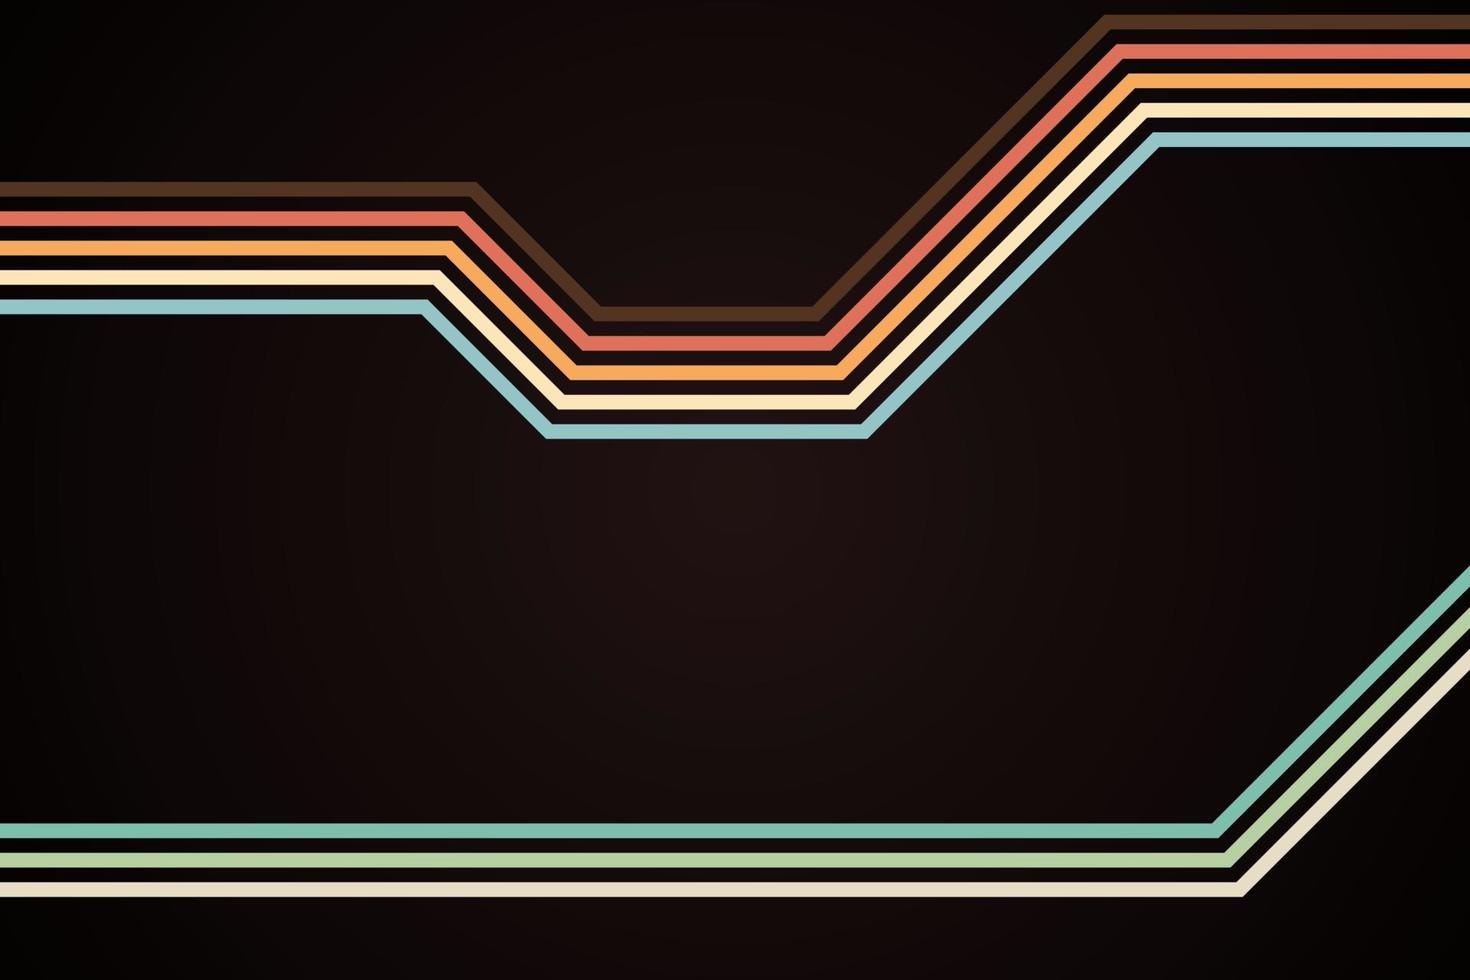 linhas listradas coloridas simples abstratas em estilo retro vetor